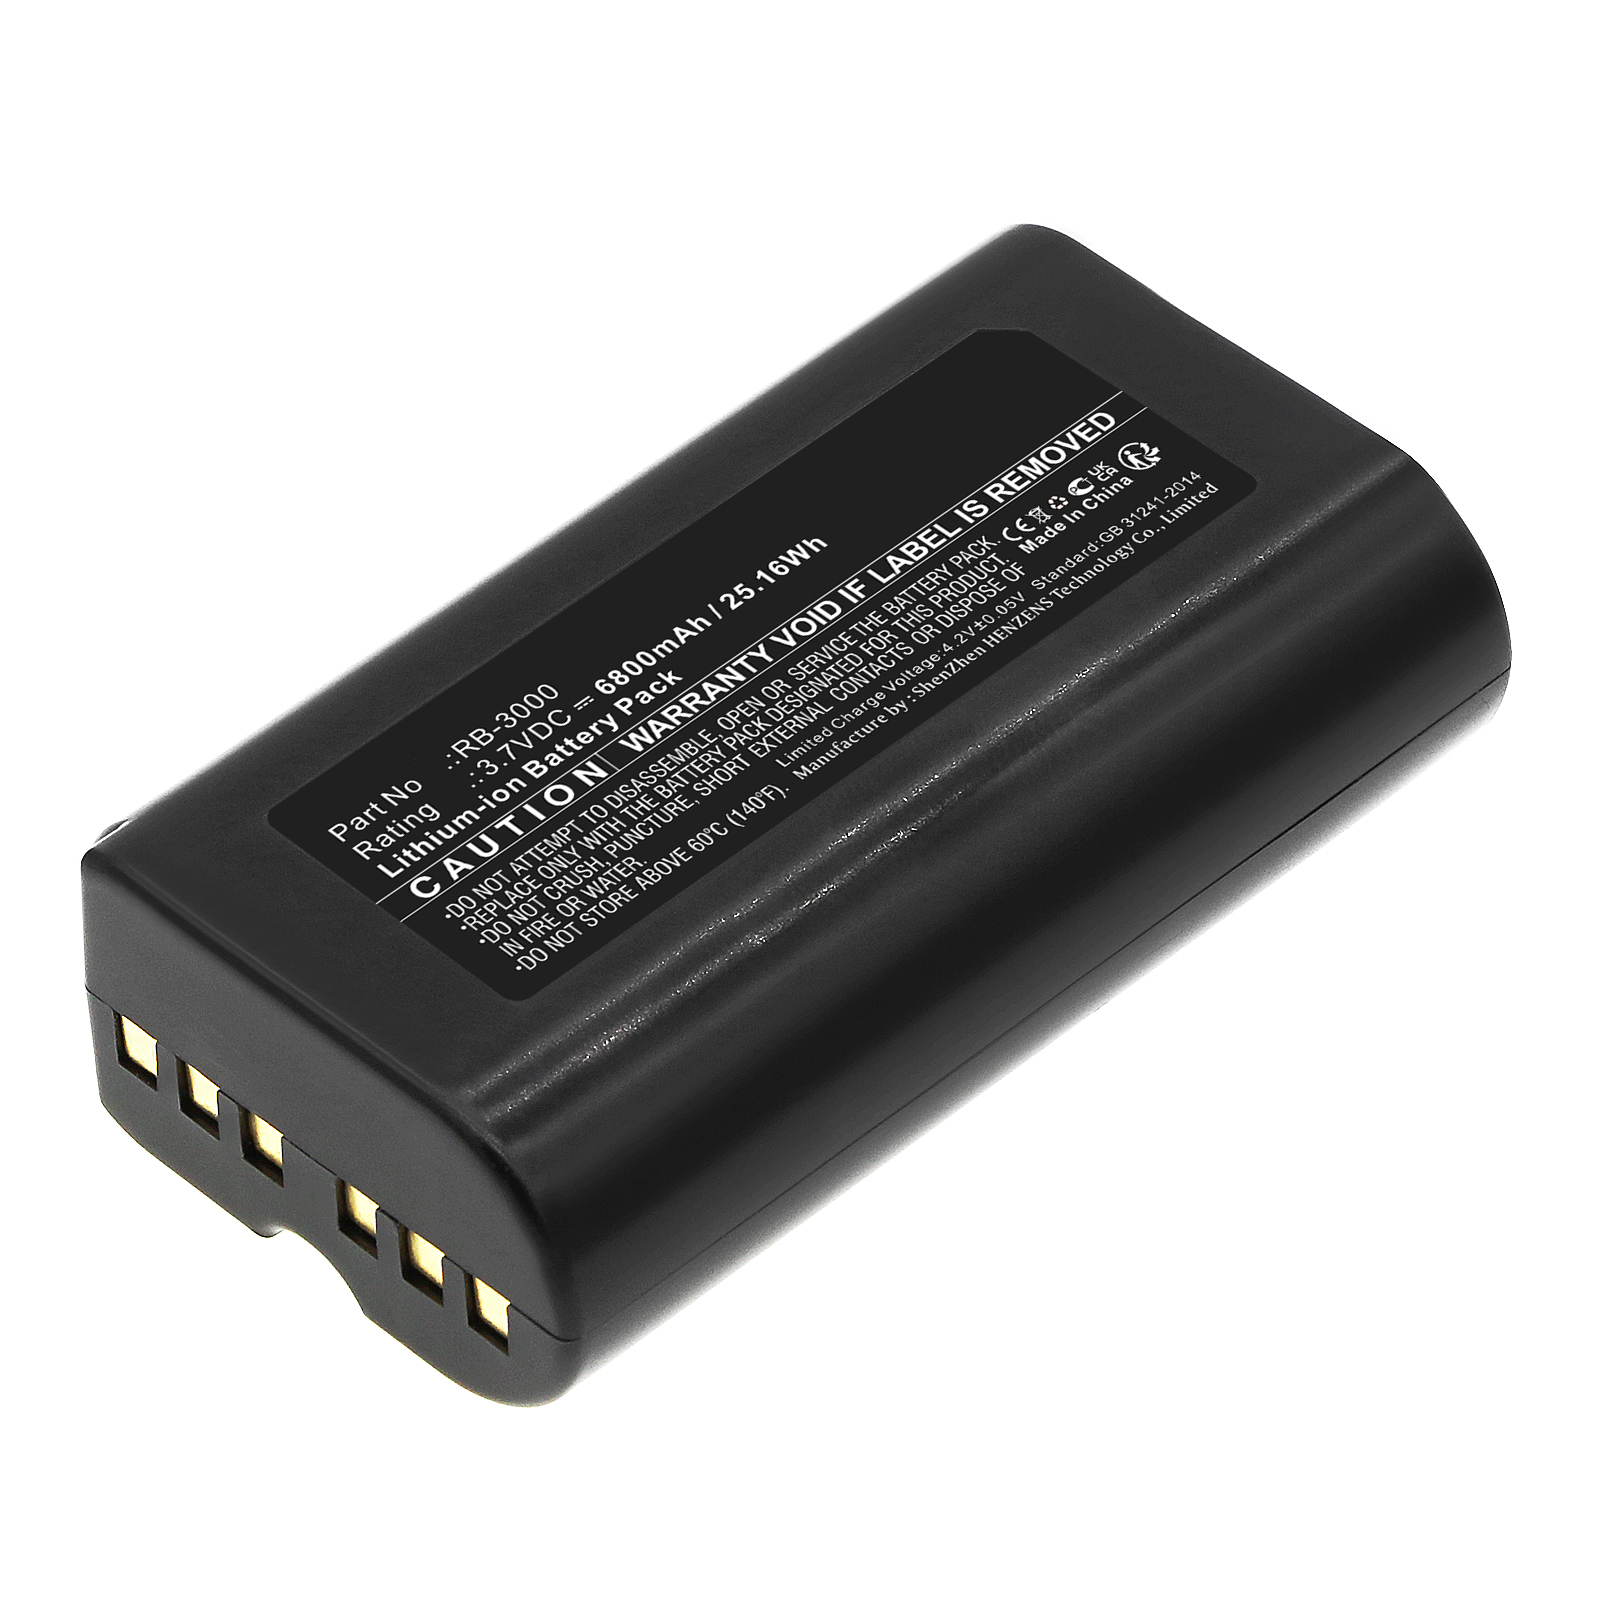 Synergy Digital Barcode Scanner Battery, Compatible with Posiflex RB-3000 Barcode Scanner Battery (Li-ion, 3.7V, 6800mAh)